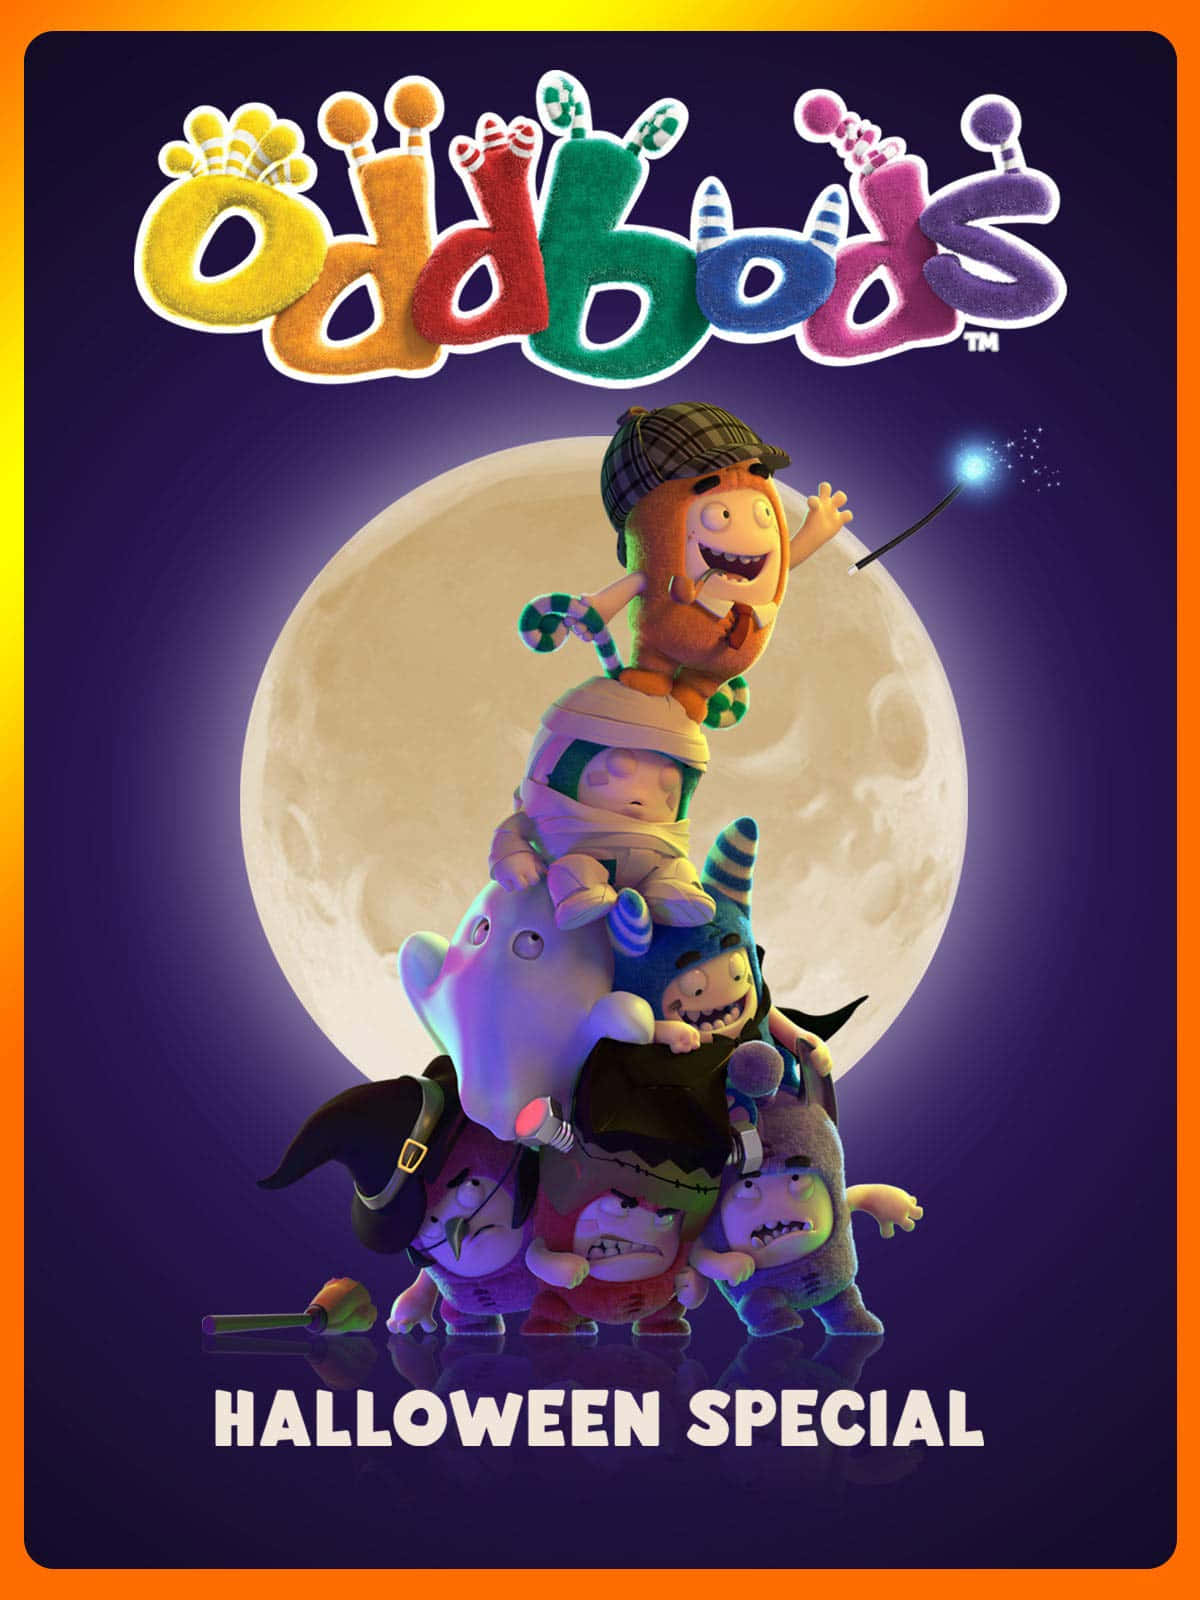 Einplakat Für Das Halloween-special Des Spiels Oddbods. Wallpaper